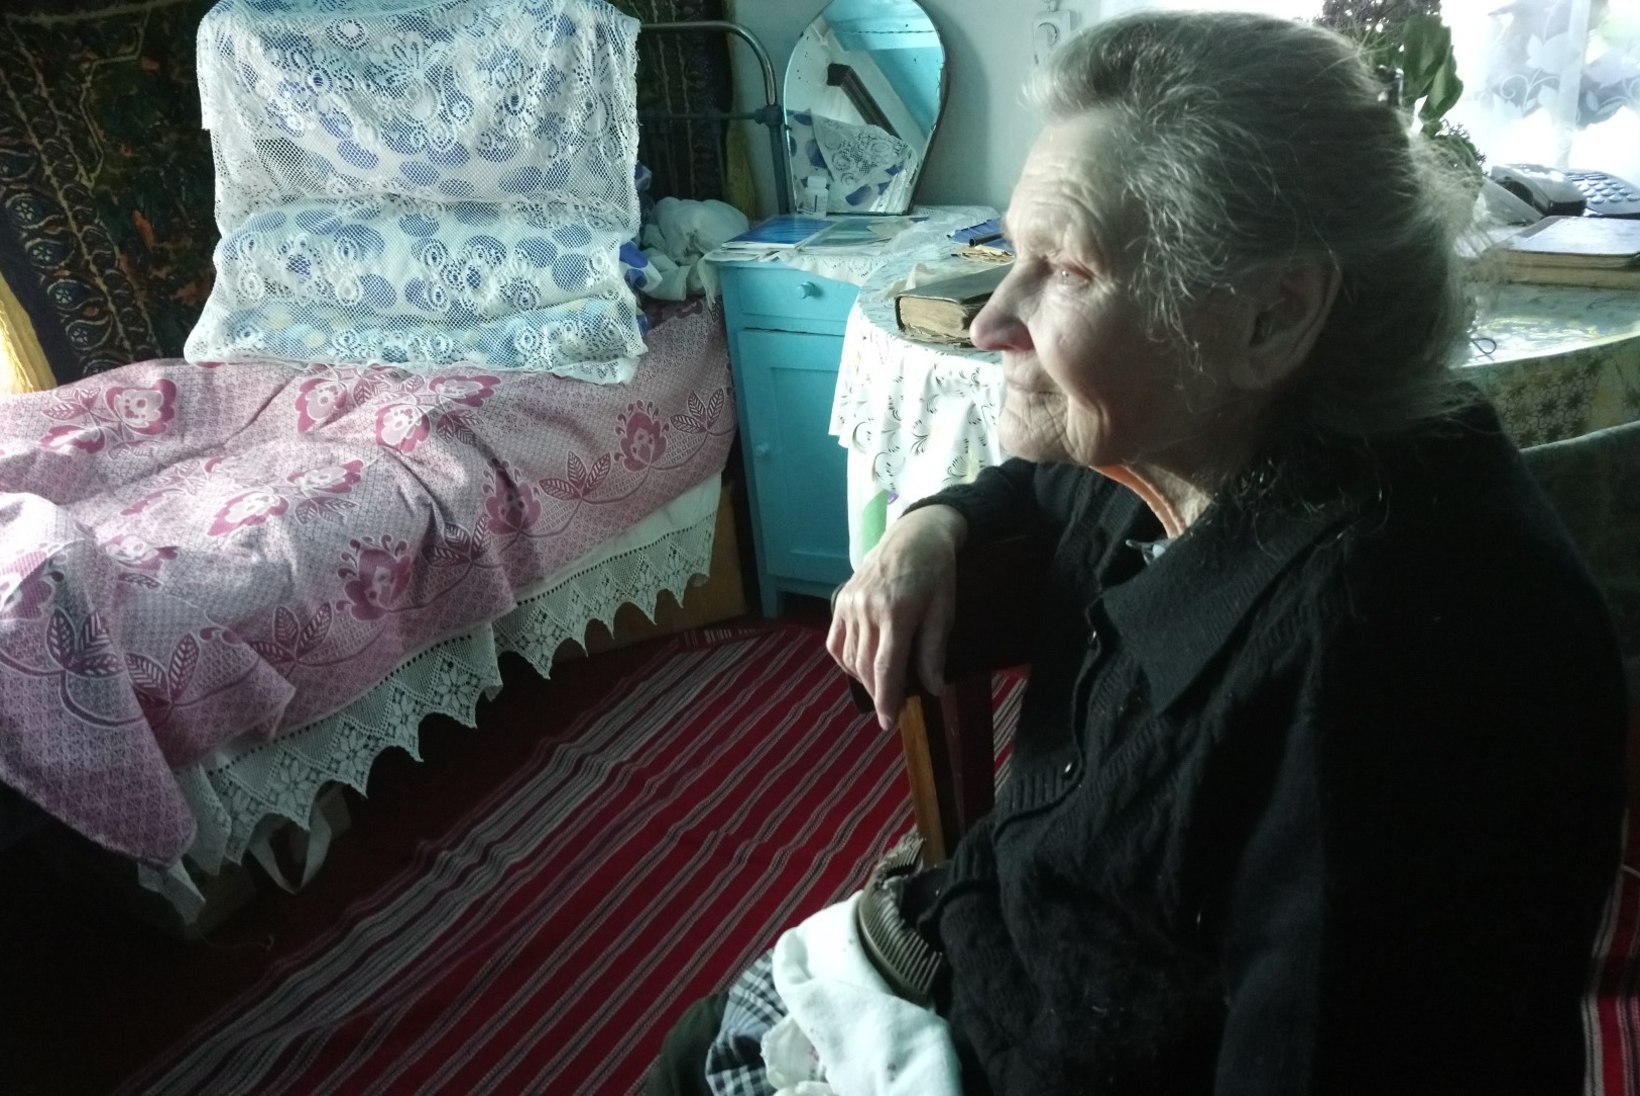 VAATA FILMI AINULT ÕHTULEHES! | MÄLESTUSTE VALGEL: kuidas elavad viimased eestlased kauges Kasahstani külas?